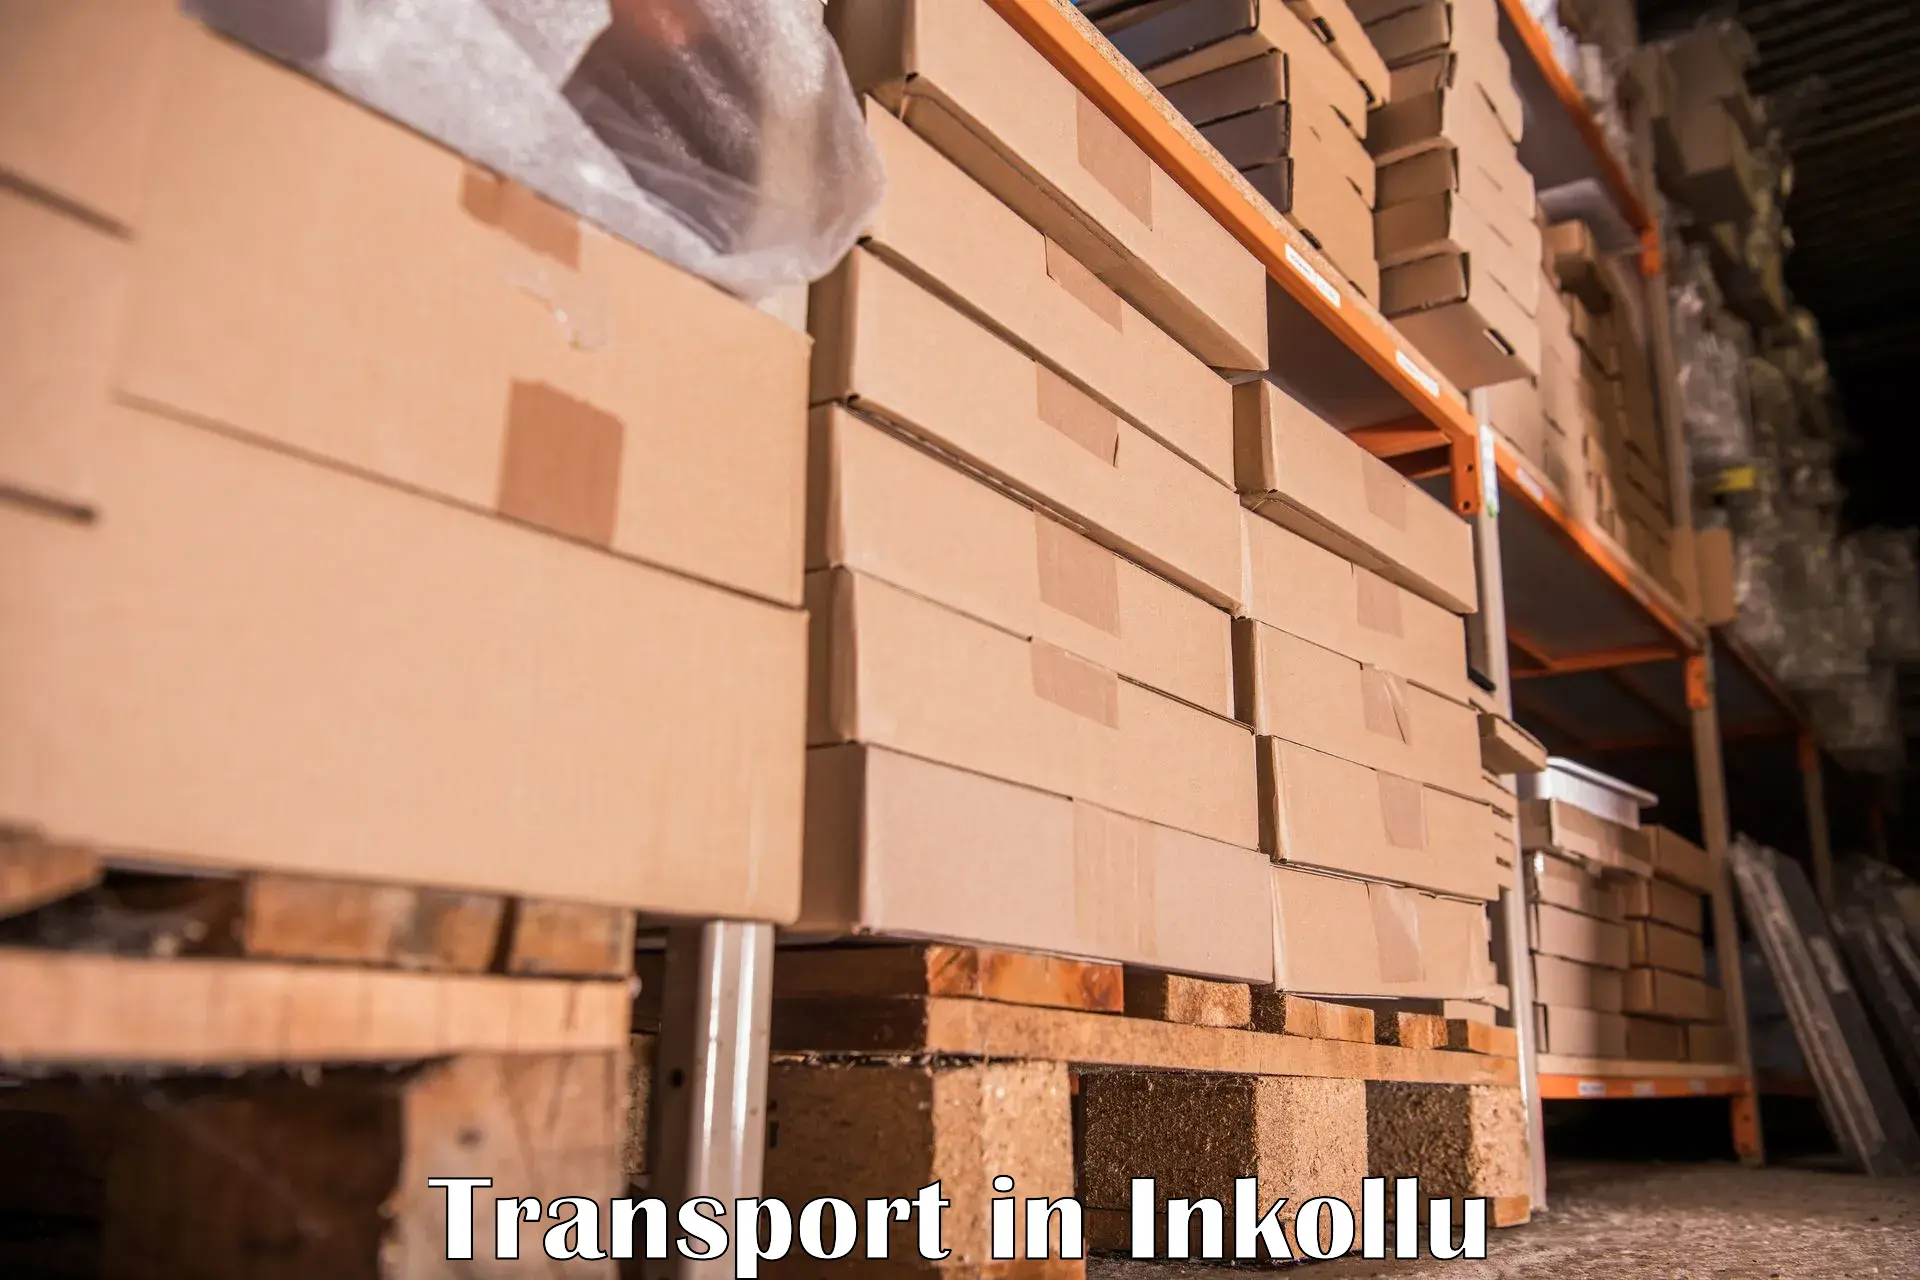 Lorry transport service in Inkollu